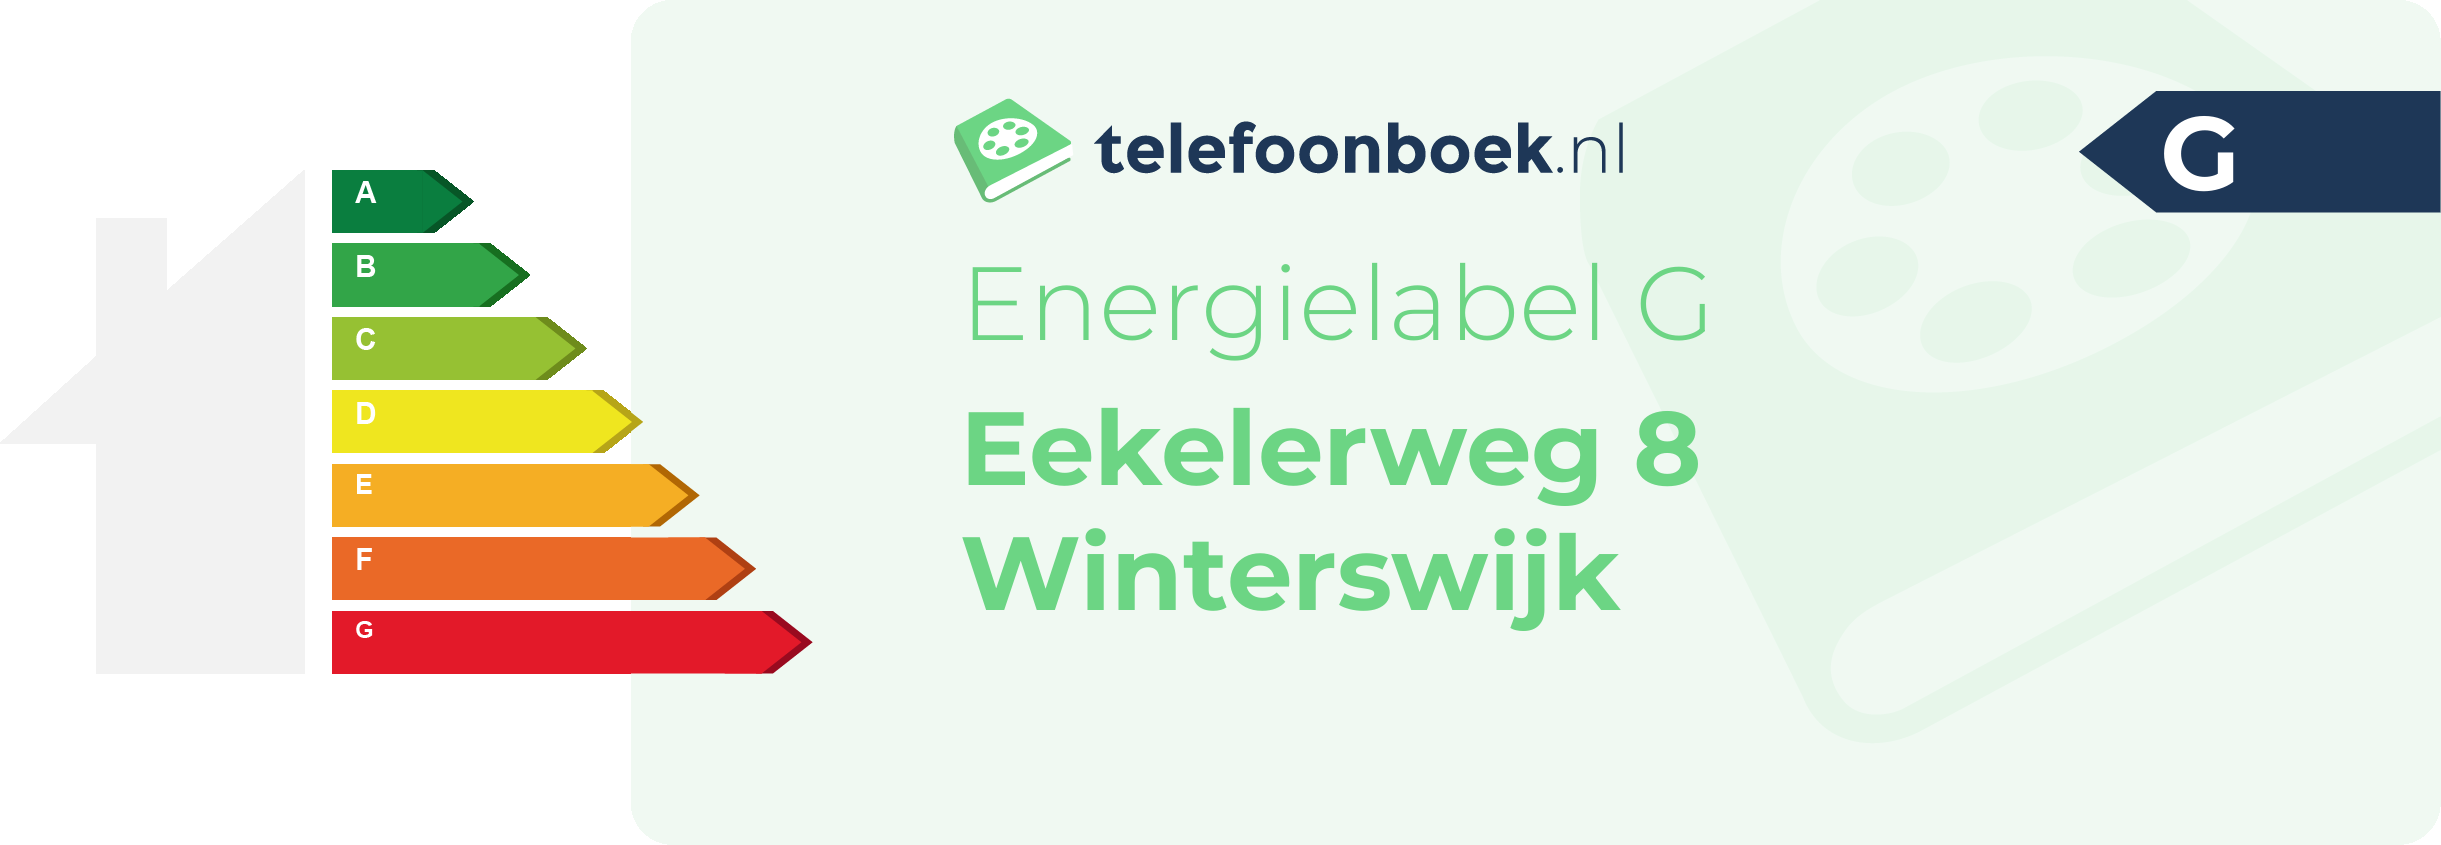 Energielabel Eekelerweg 8 Winterswijk